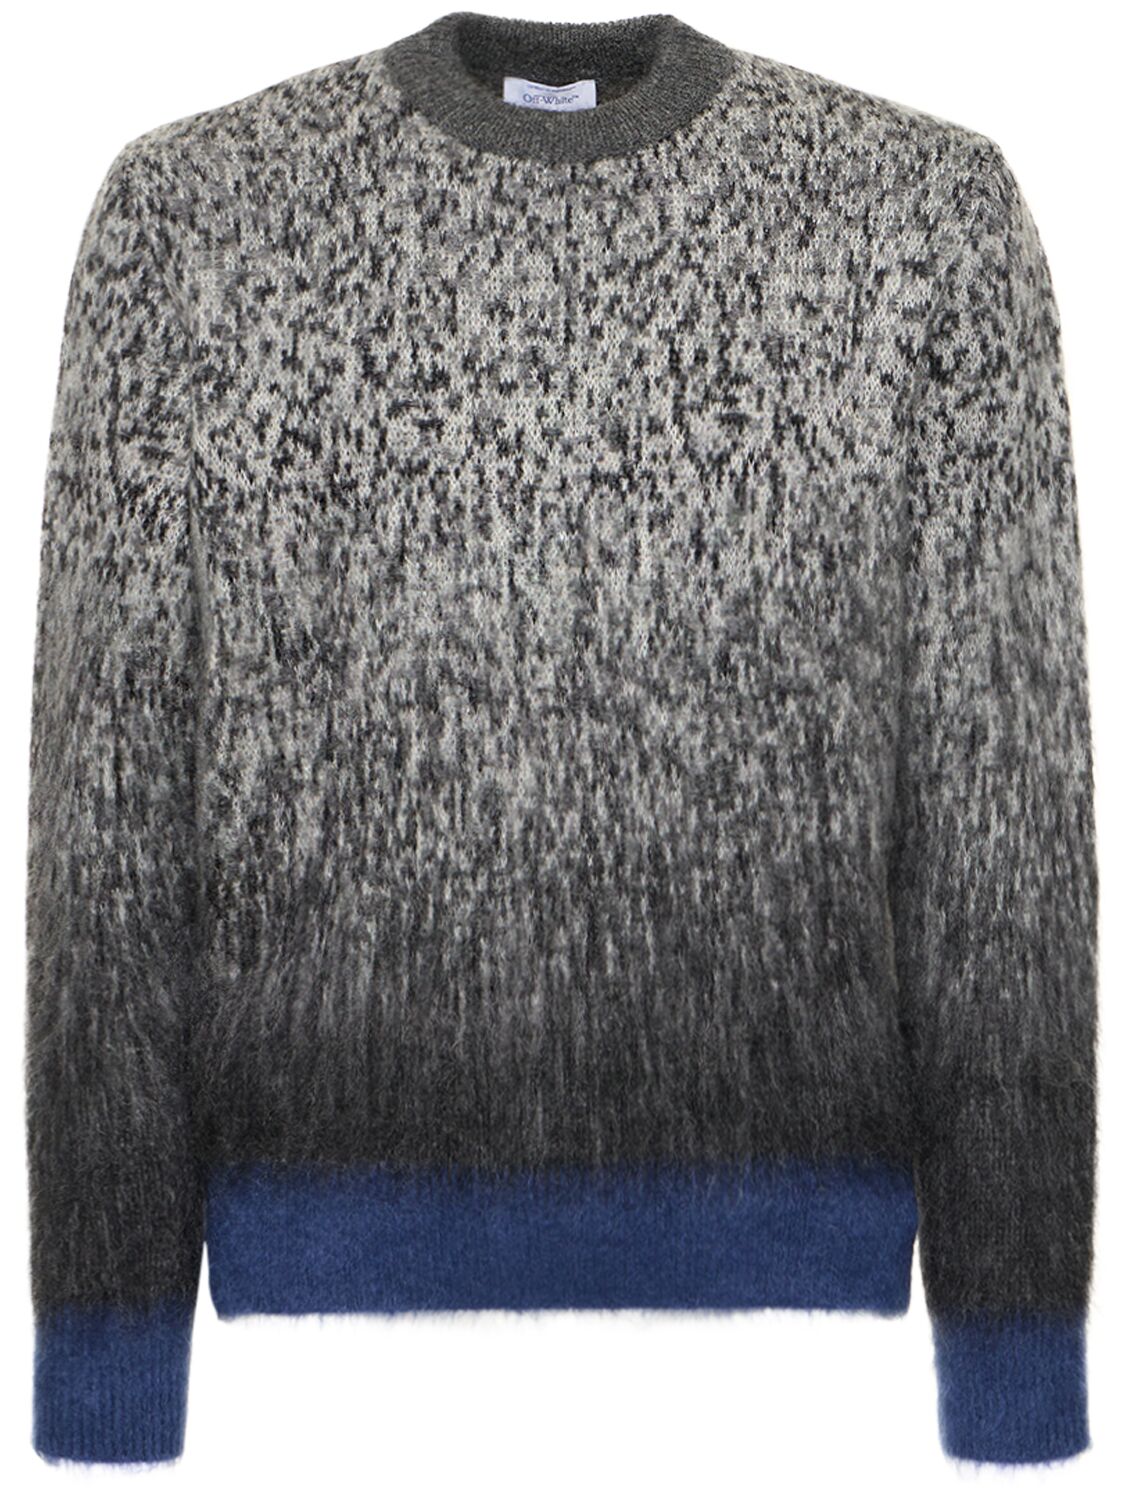 Degradé Arrow Mohair Blend Knit Sweater – MEN > CLOTHING > KNITWEAR